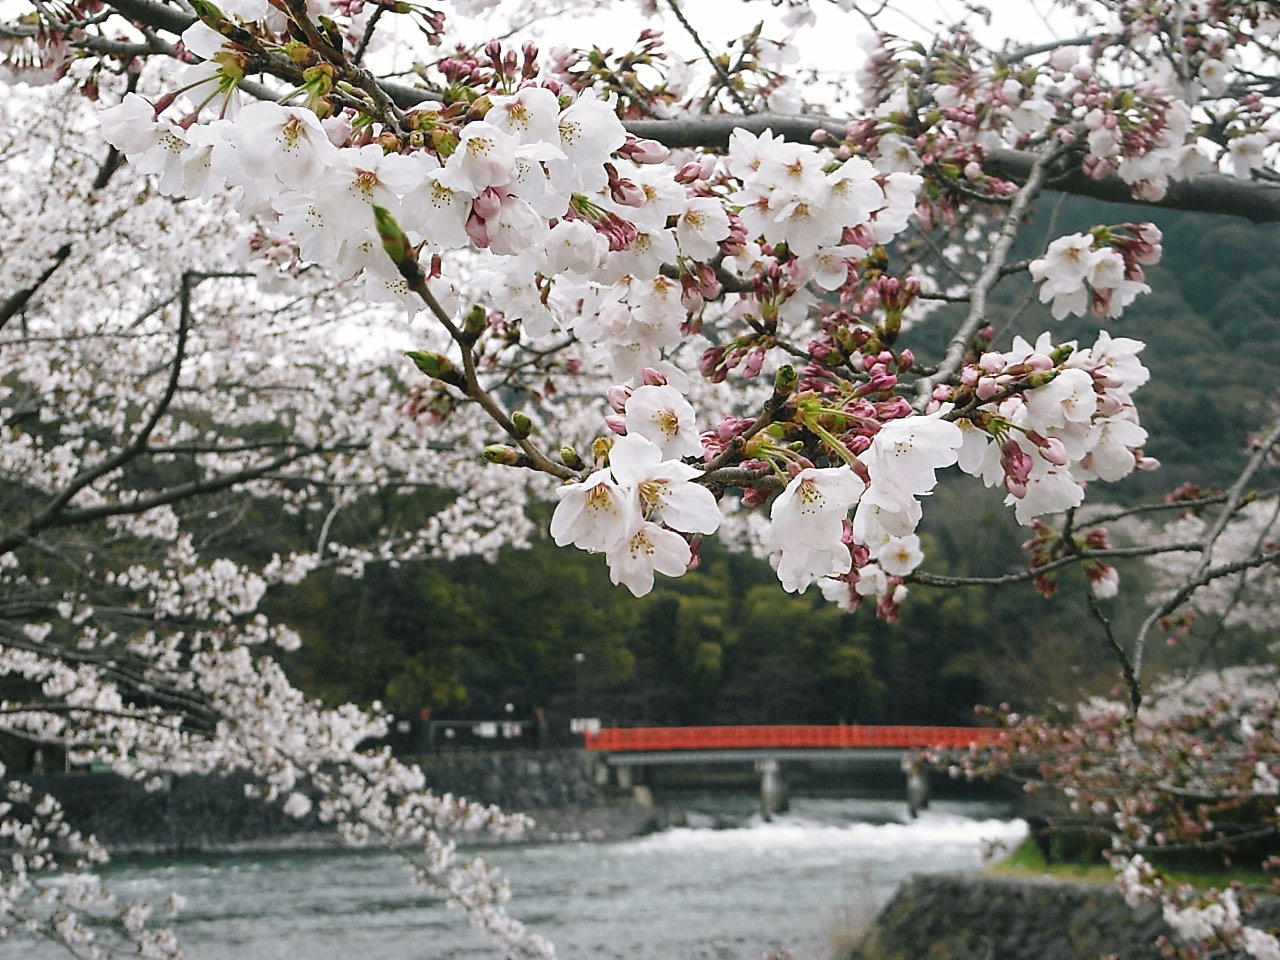 ２００９ 京の桜巡り さくらまつり で賑わう宇治散策 1 宇治 京都 の旅行記 ブログ By ゆっこさん フォートラベル